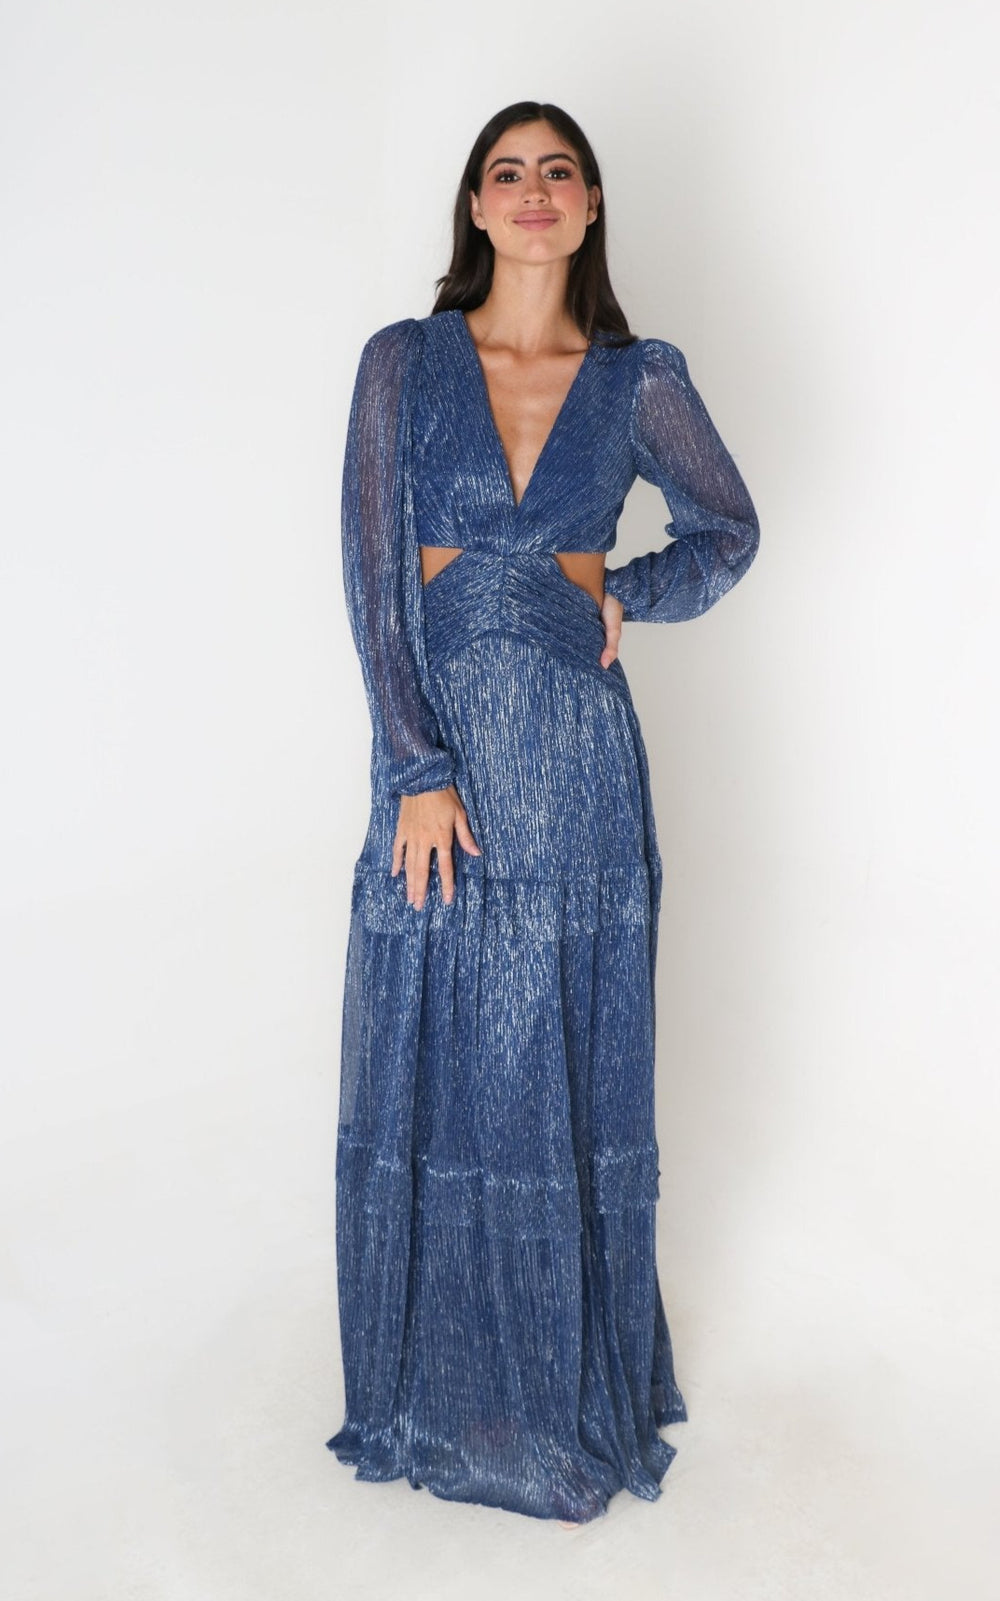 Dalila - azul - Lend the Trend renta de vestidos mexico